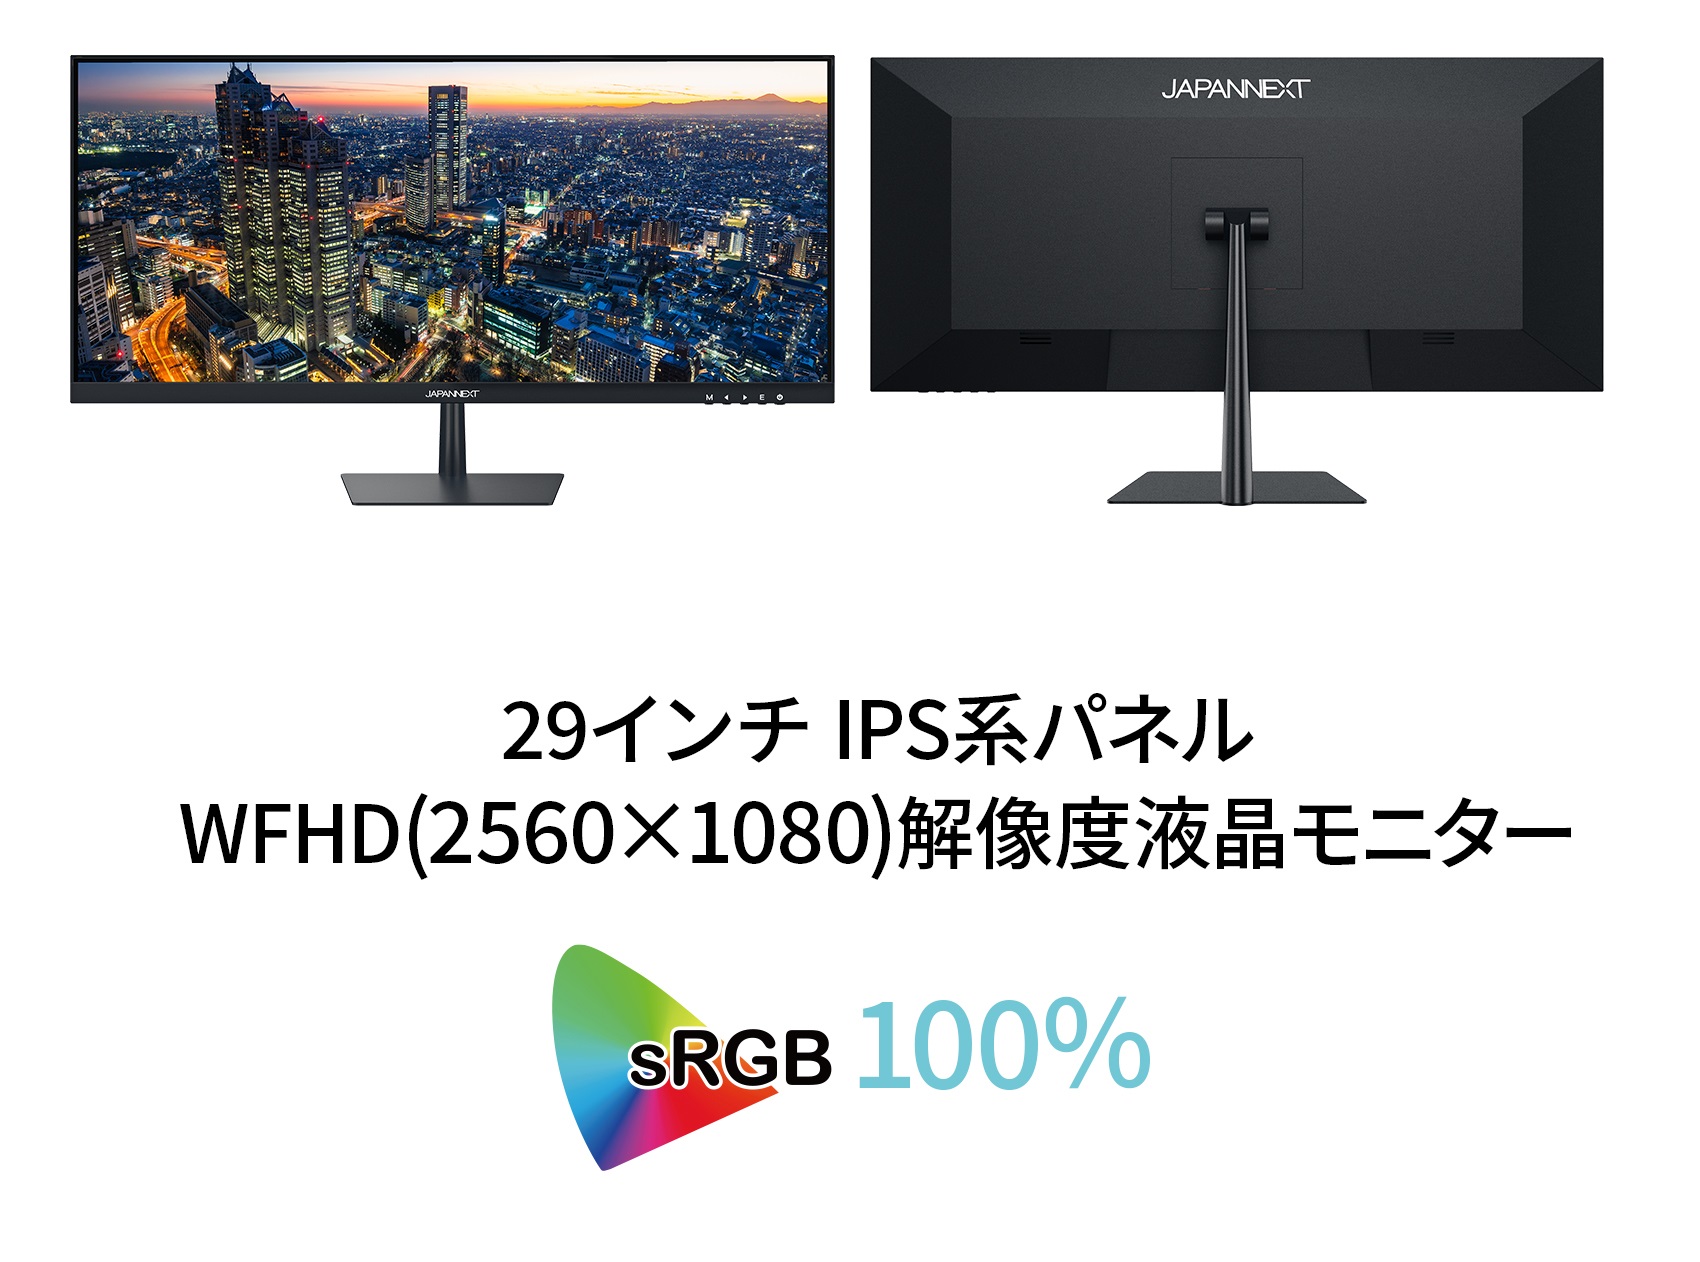 JAPANNEXT 29インチ ワイドFHD(2560 x 1080) 液晶モニター ウルトラ